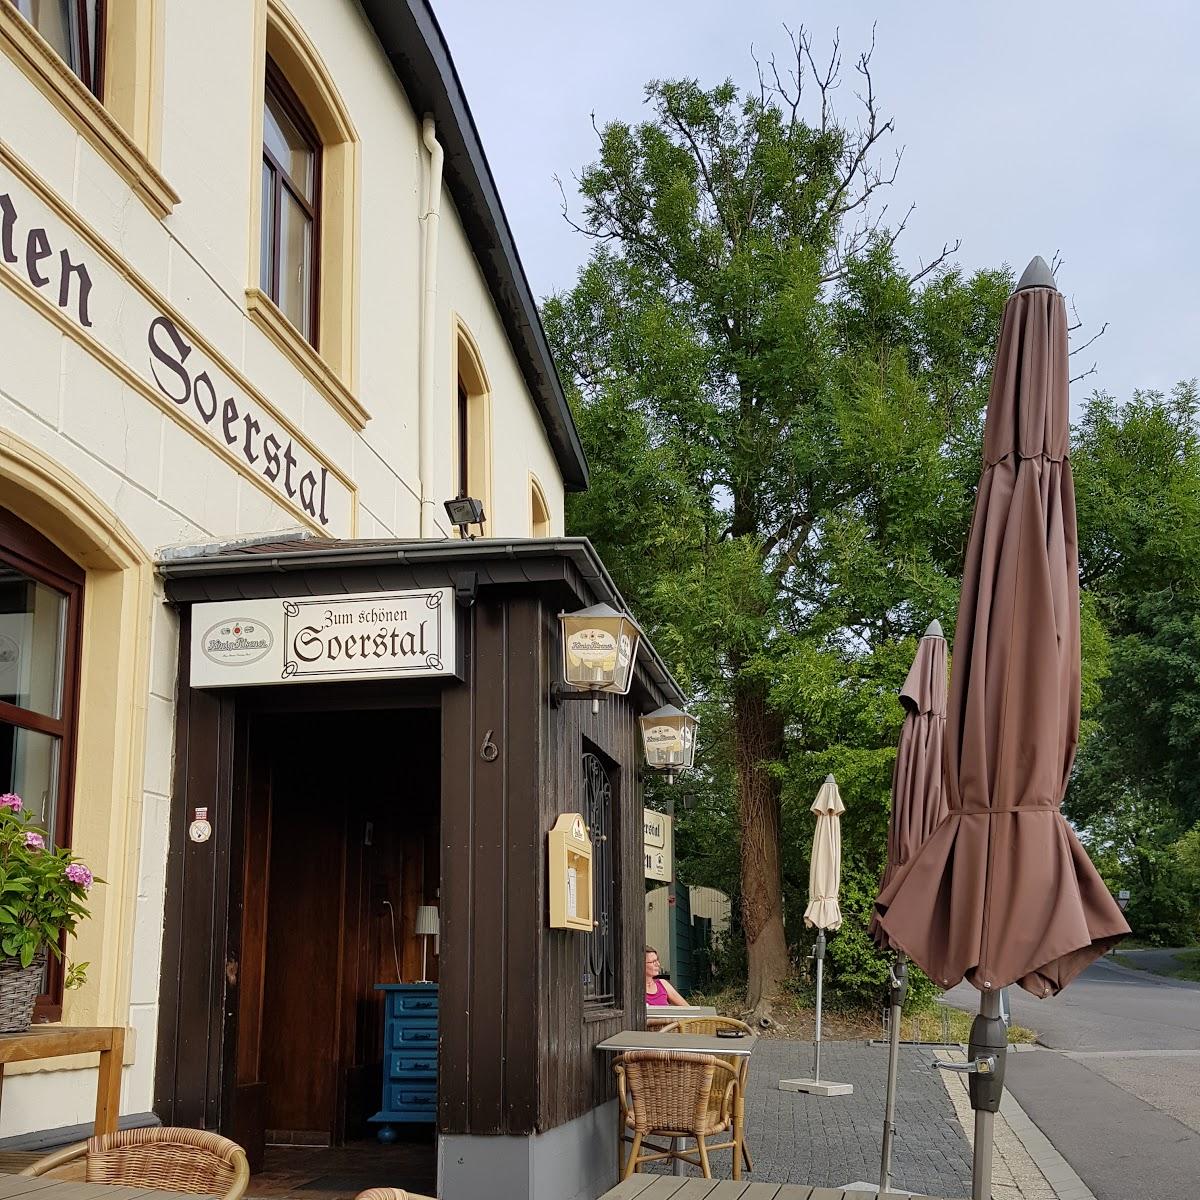 Restaurant "Zum Schönen Soerstal" in Aachen